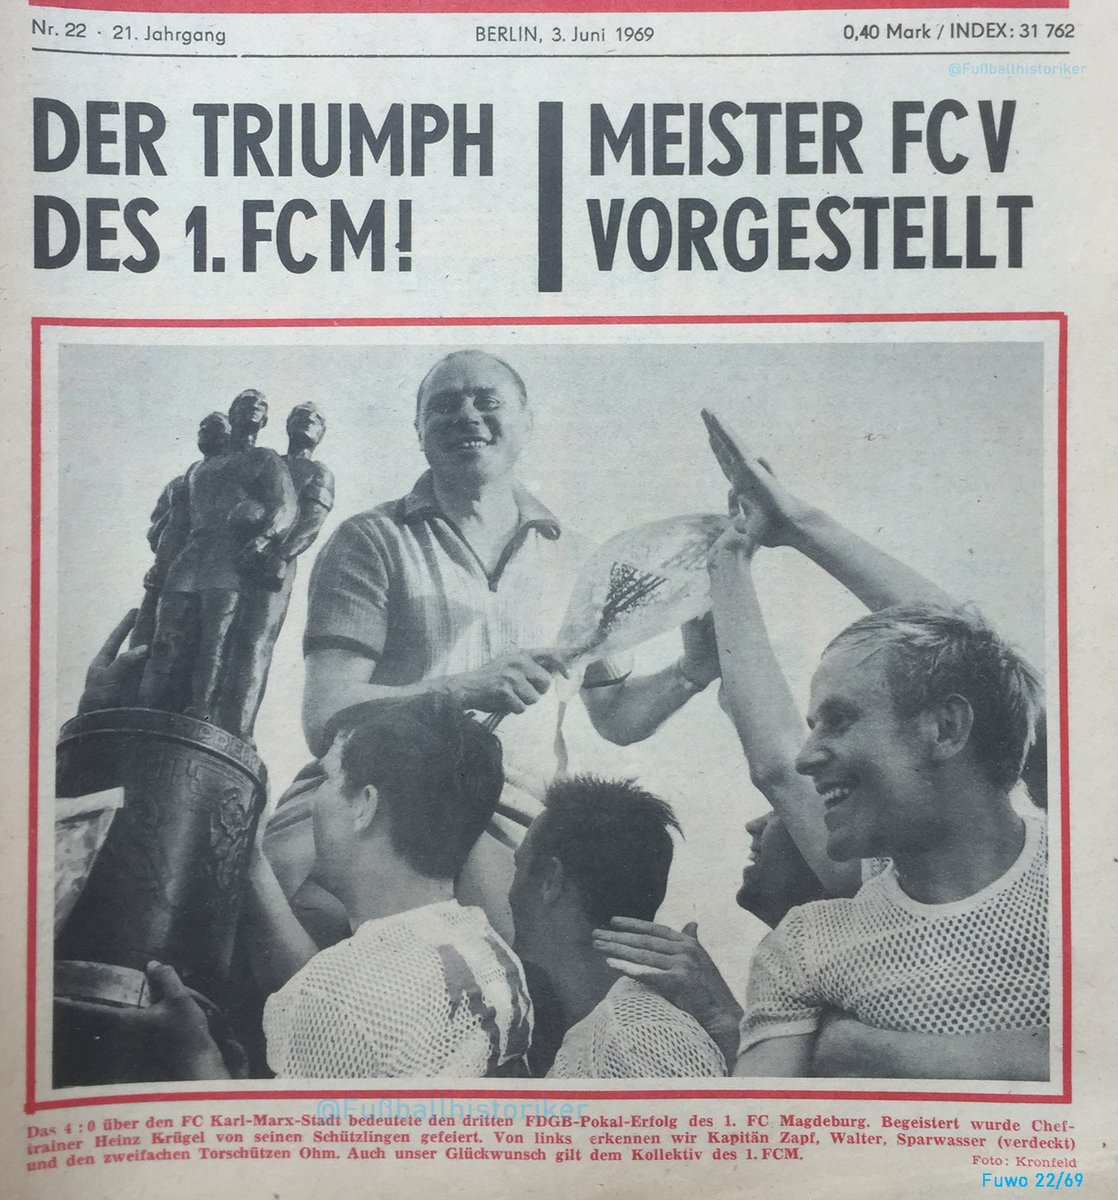 31.05.69 @1_FCM gewinnt in #Dresden zum 3. Mal den #FDGB-Pokal. Beim 4:0 über @ChemnitzerFC stellen die Magdeburger den Rekord um den höchsten Endspielsieg ein. Dieser 3. Erfolg macht sie schon 1969 zum Rekordpokalsieger, ein Titel den sie nie wieder abgeben. #DDRFußballkalender